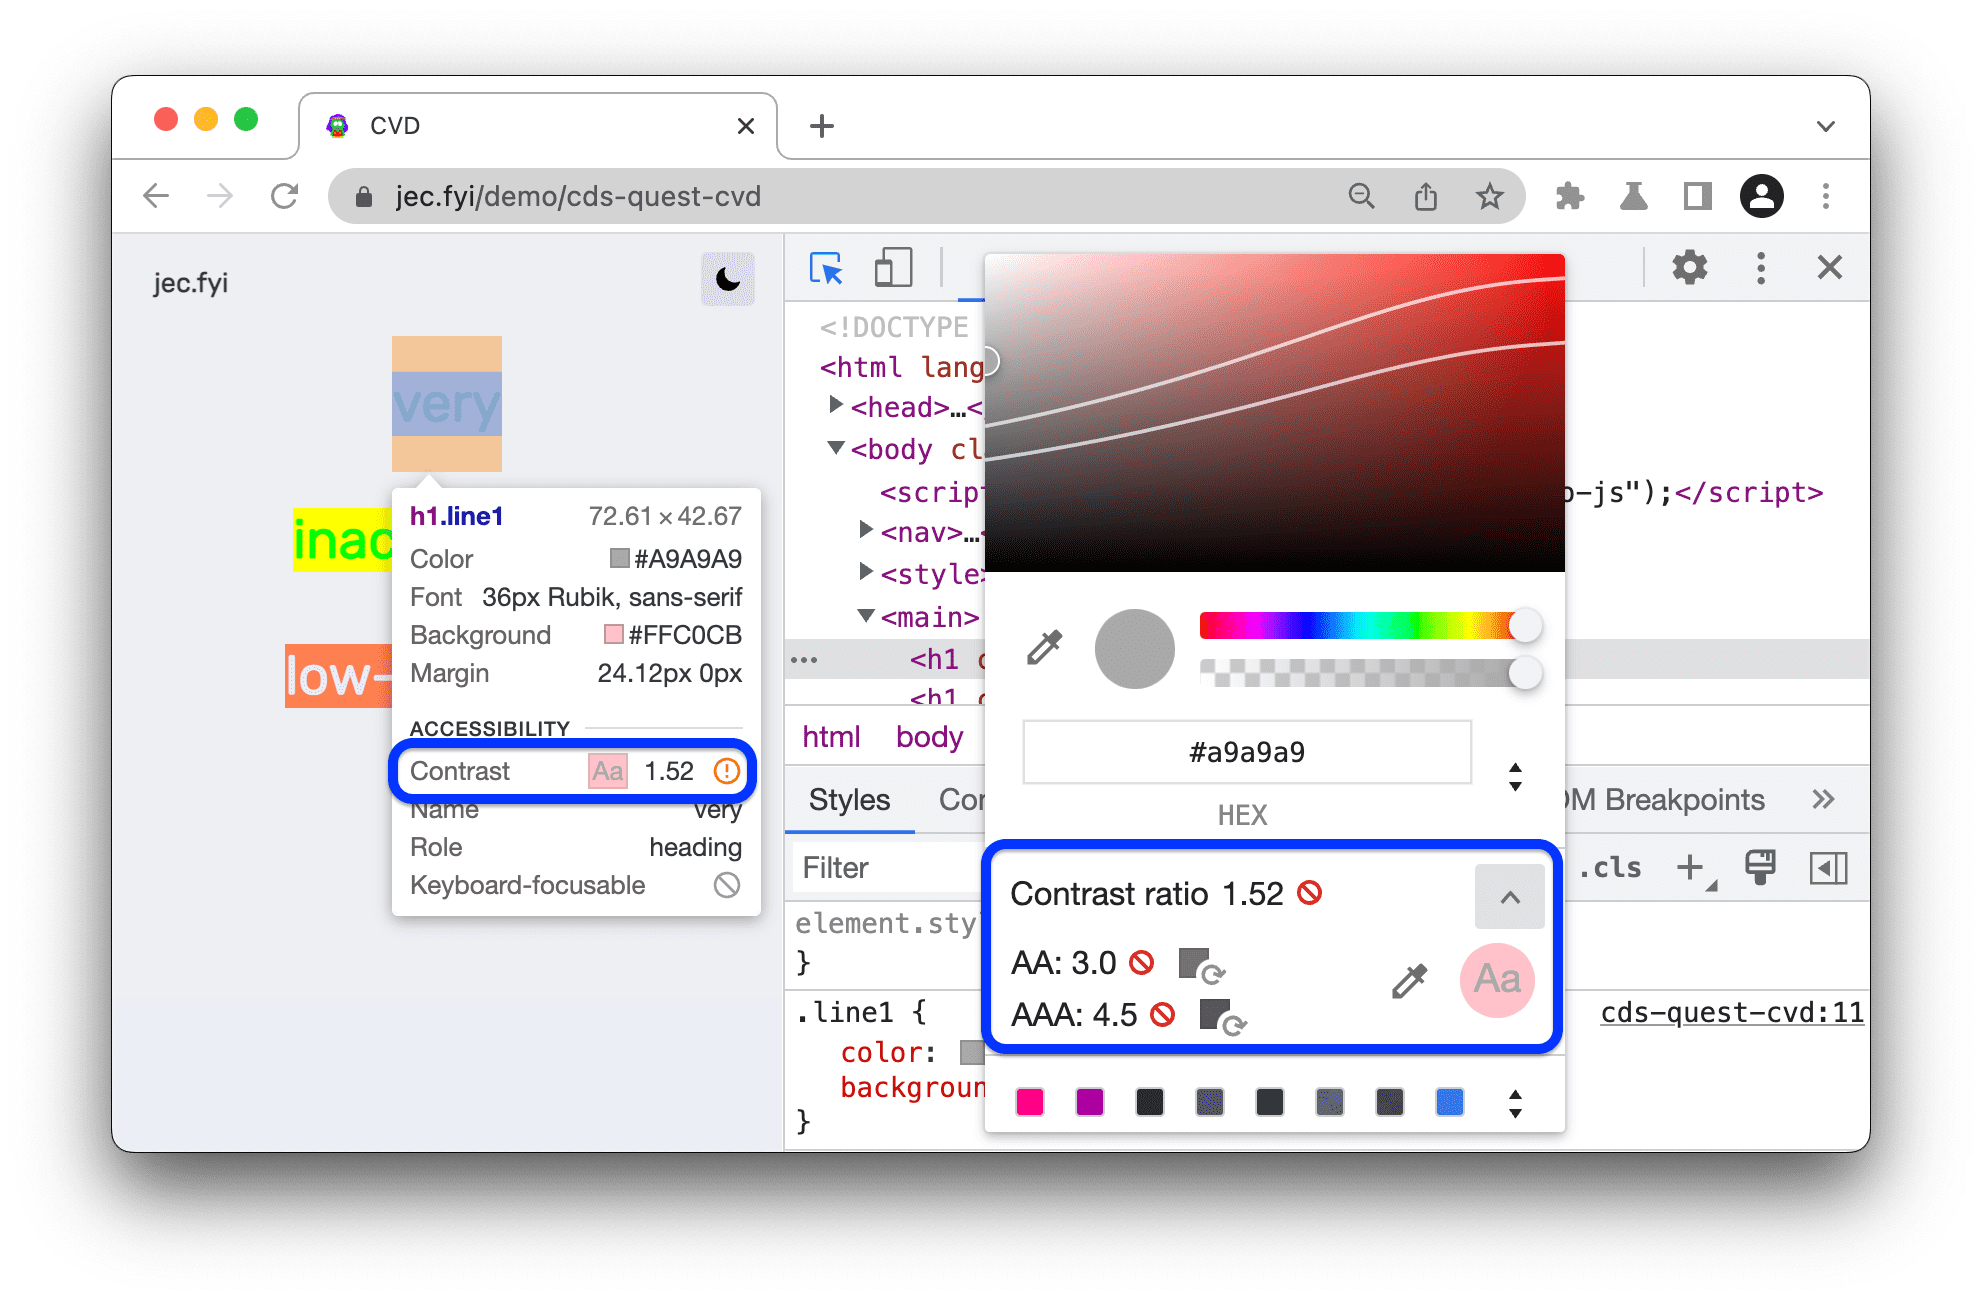 Les rapports de contraste sont disponibles dans une info-bulle, avec un sélecteur de couleur pour mesurer le ratio des autres couleurs. La notation AA et AAA de la ration est disponible.